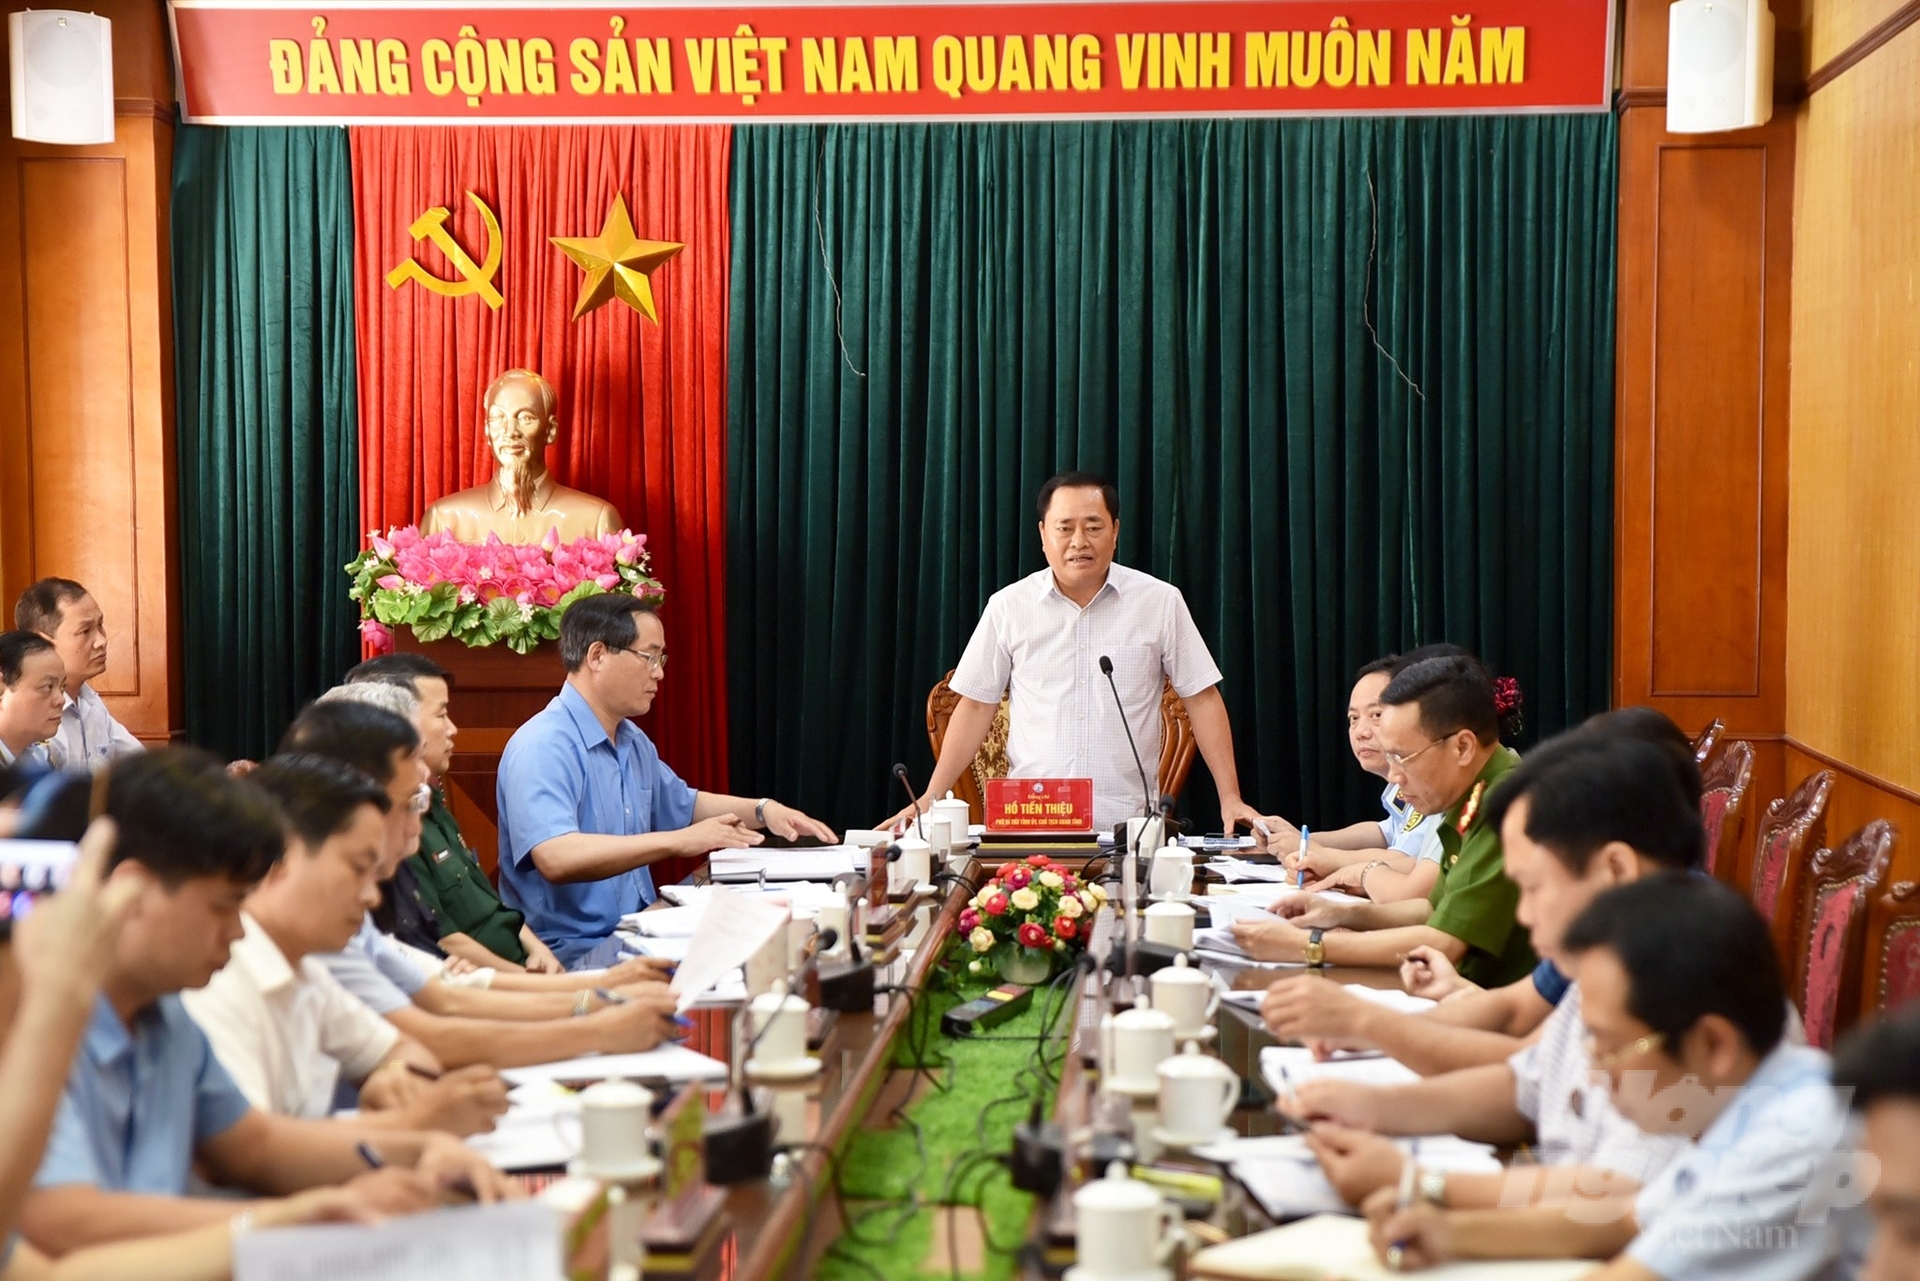 Chủ tịch UBND tỉnh Lạng Sơn Hồ Tiến Thiệu triệu tập cuộc họp nóng chỉ đạo công tác ngăn chặn giống gia cầm nhập lậu. Ảnh: Tùng Đinh.